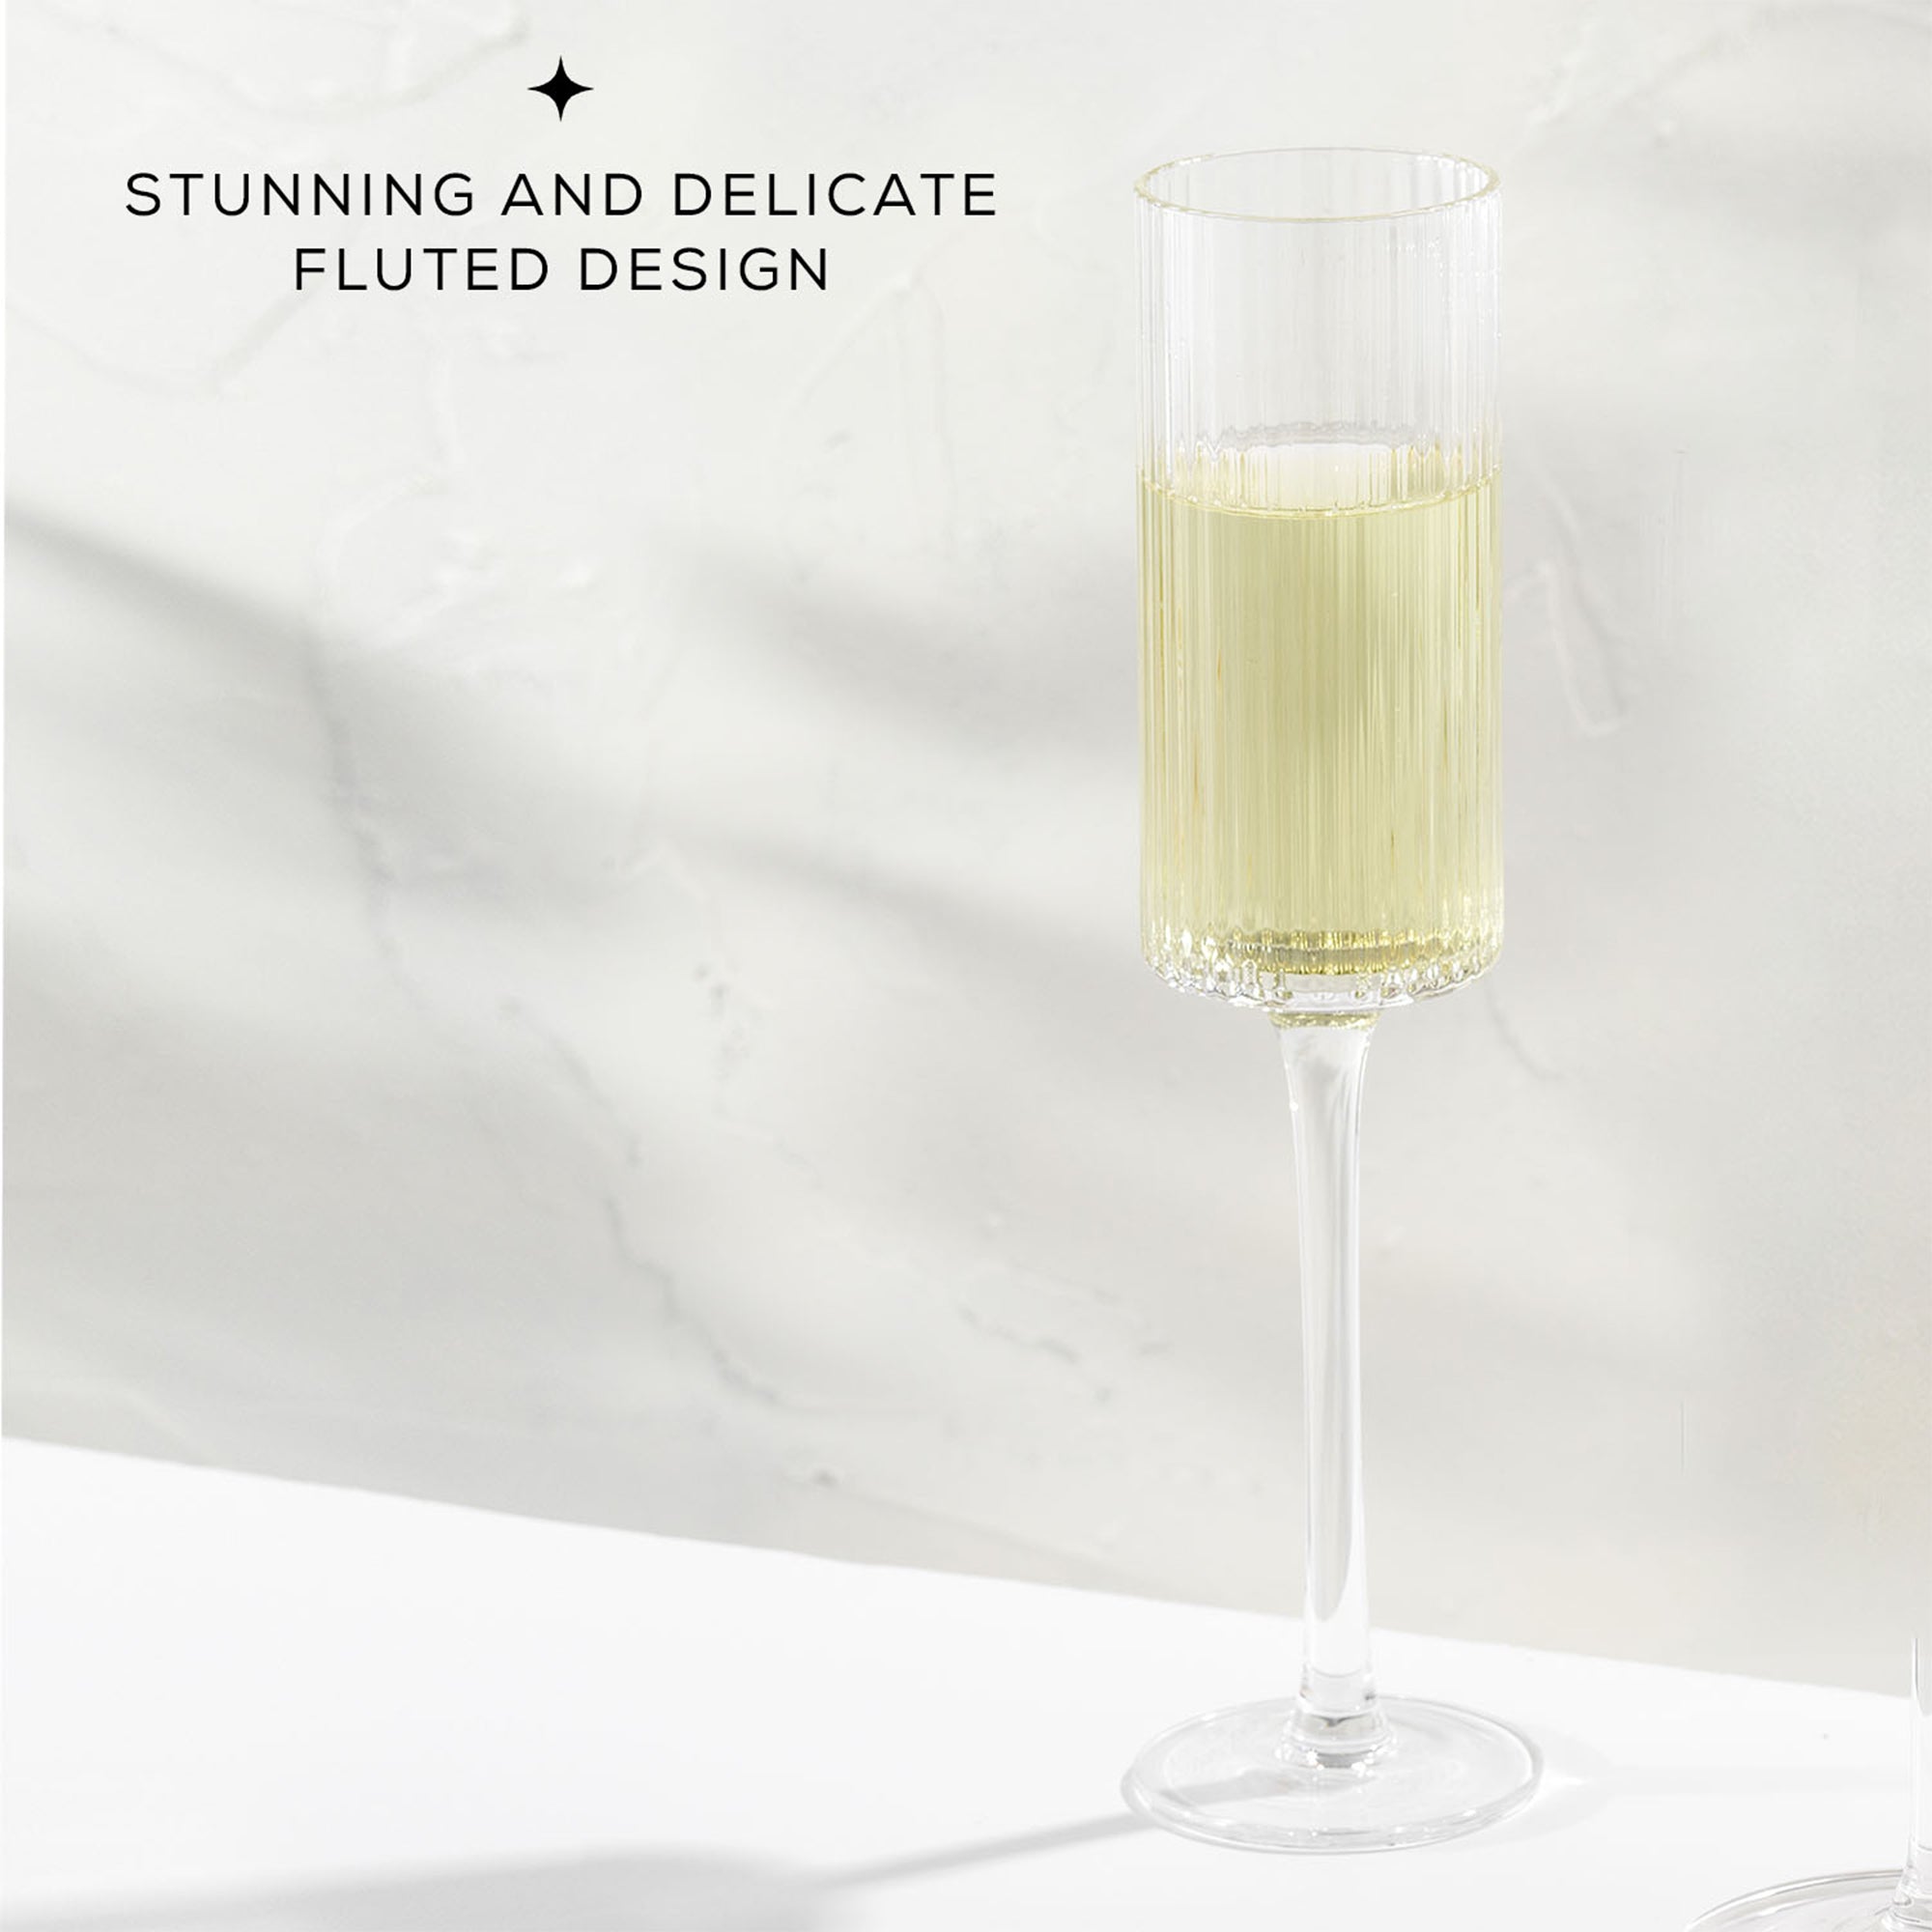 JoyJolt Elle Fluted Cylinder Champagne Glasses Set